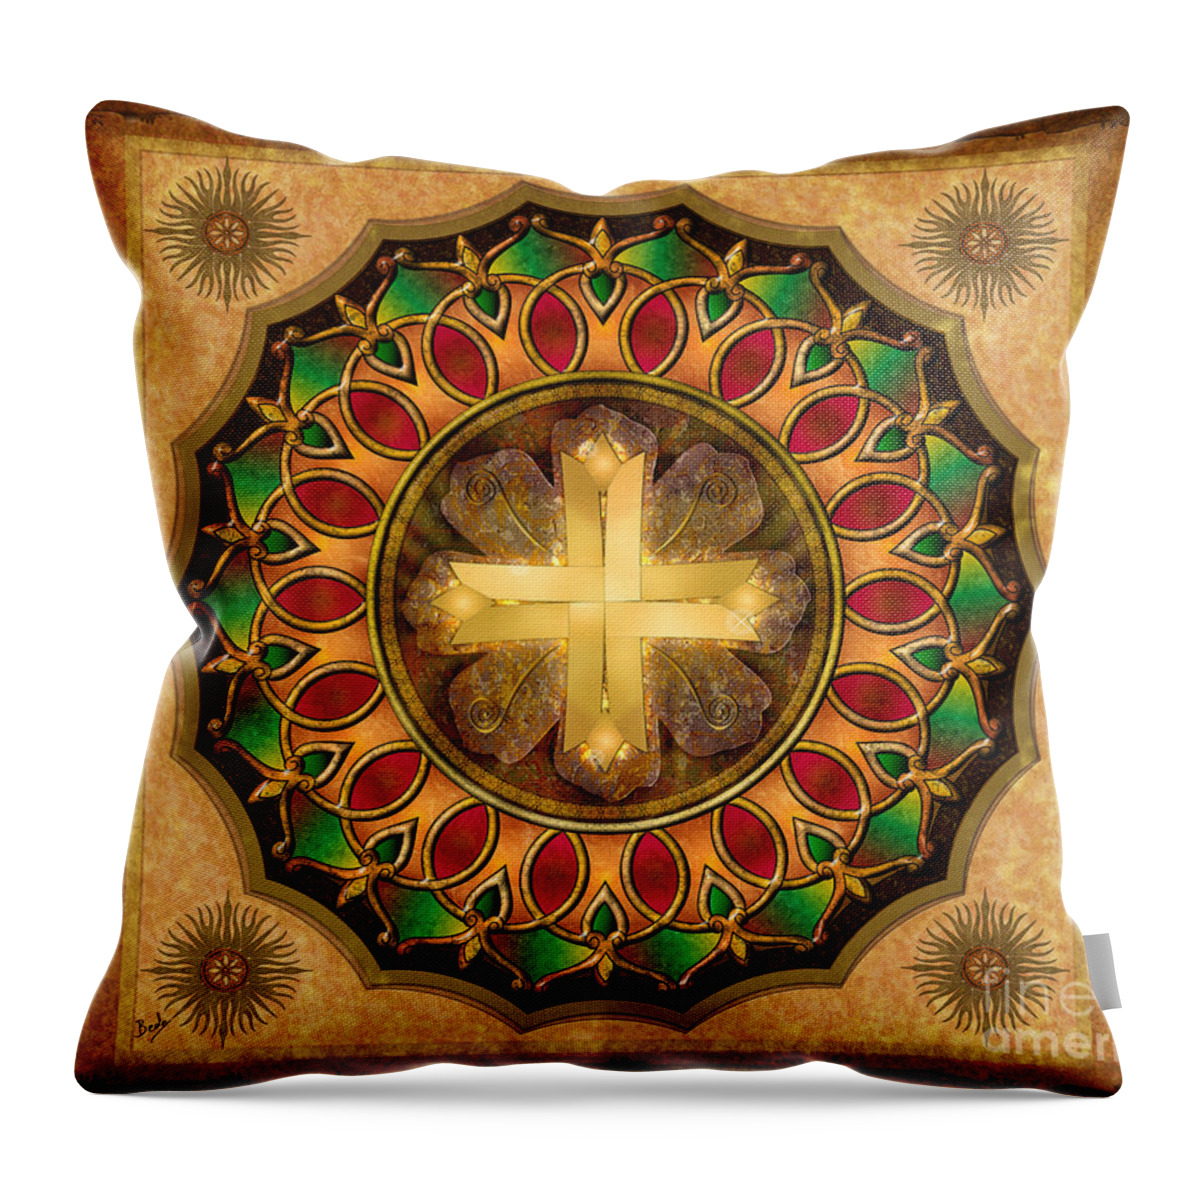 Mandala Throw Pillow featuring the digital art Mandala Illuminated Cross sp by Peter Awax